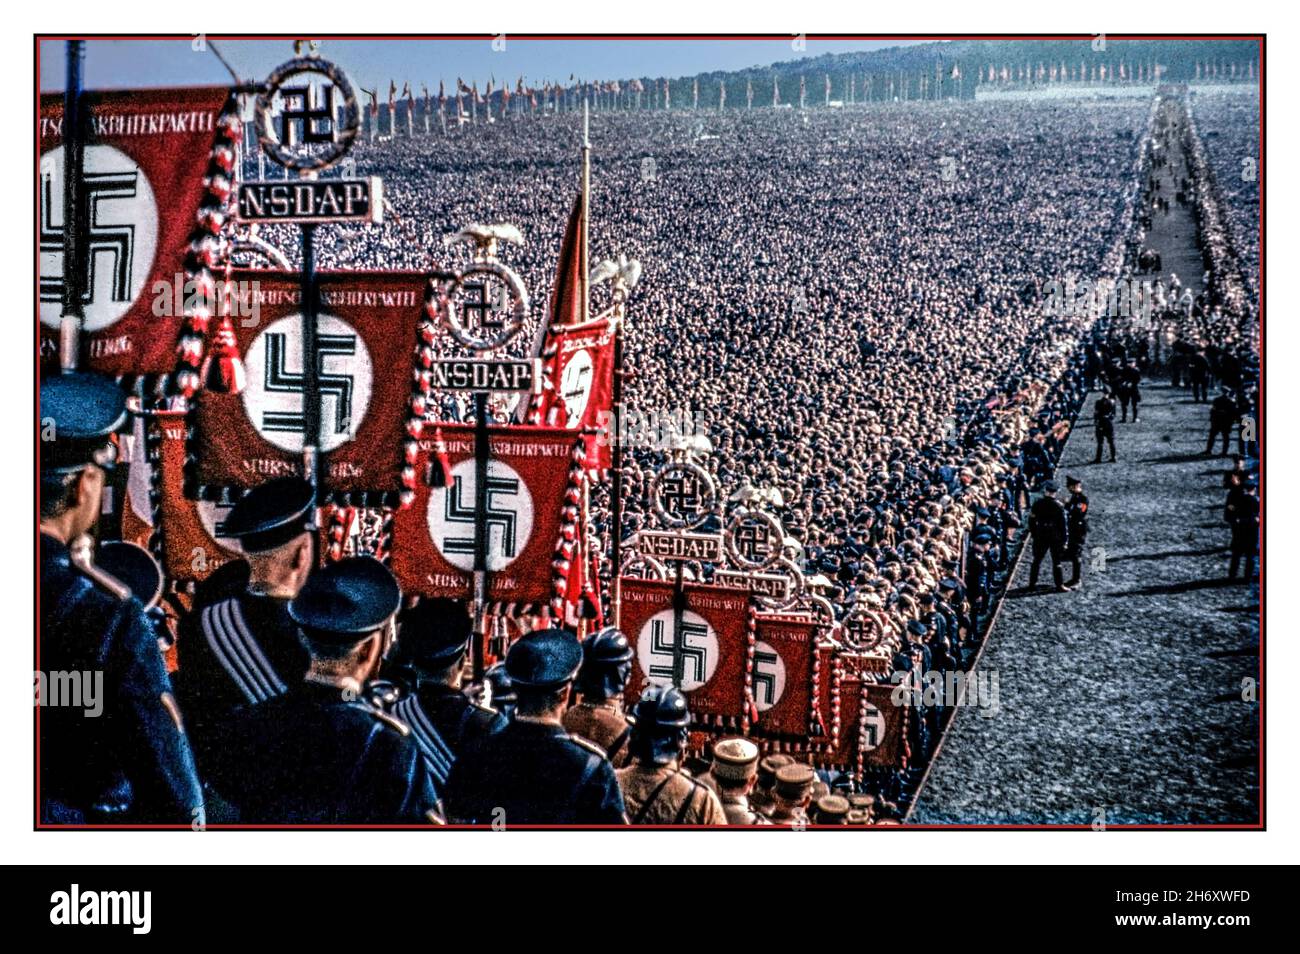 1930s NSDAP-Banner und Hakenkreuz-Emblem im Vordergrund, in Farbe, mit Transparenten und Fahnen im überfüllten Hauptaula im Freien, mit Tausenden von Nazi-Parteiunterstützern und seltenen Farbbildern, mit NSDAP-Bannern und Hakenkreuz-Emblem im Vordergrund. Die Nazi-Partei offiziell die nationalsozialistische Deutsche Arbeiterpartei (NSDAP) war eine rechtsextreme politische Partei in Deutschland, die zwischen 1920 und 1945 aktiv war und die Ideologie und Propaganda des Nationalsozialismus und der Nazi-Partei unter der Führung des ‘Führers’ Adolf Hitler Nazi-Deutschland schuf und unterstützte Stockfoto